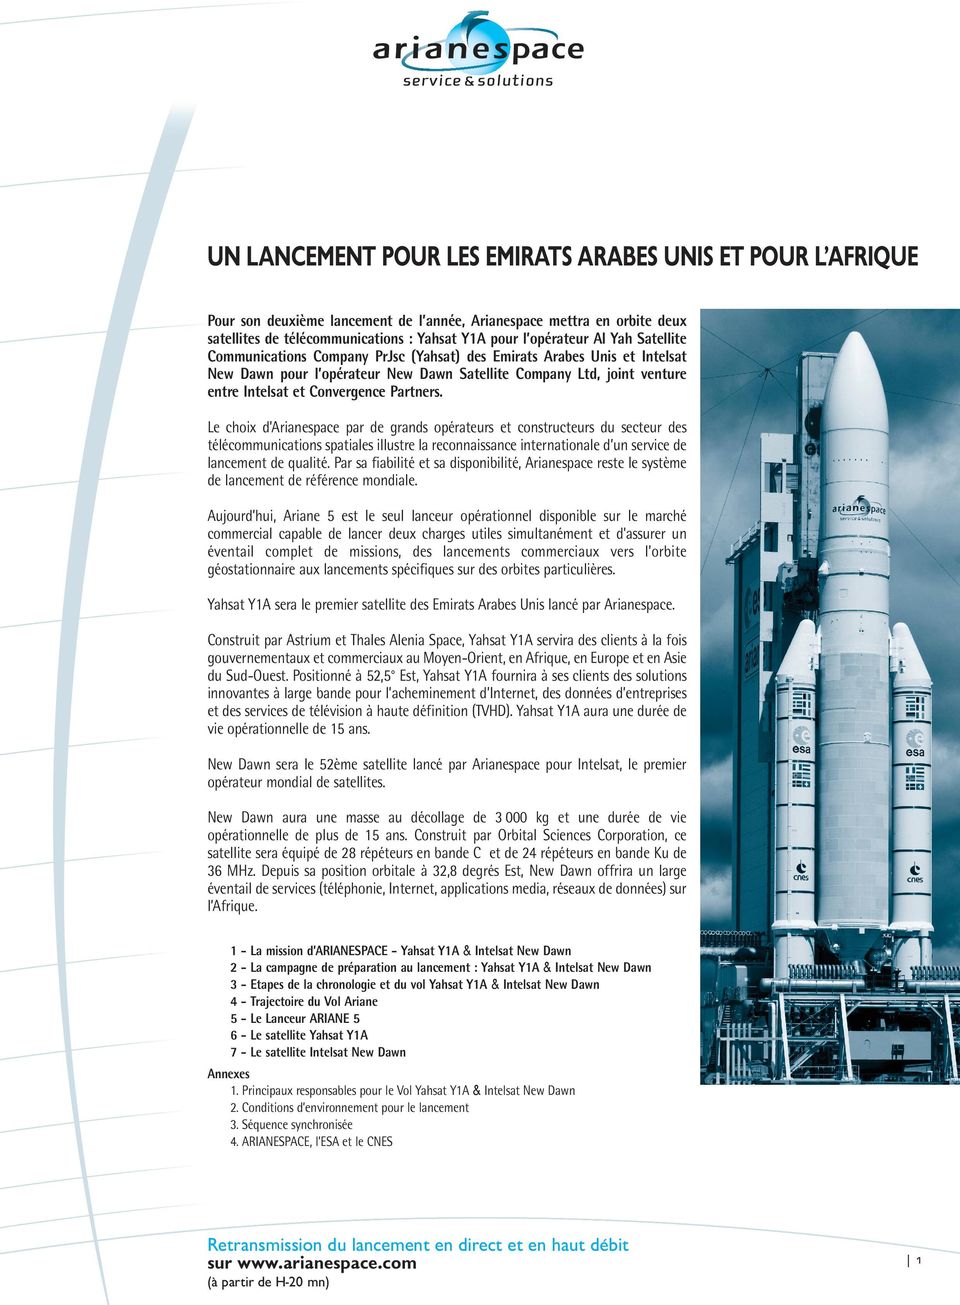 Le choix d Arianespace par de grands opérateurs et constructeurs du secteur des télécommunications spatiales illustre la reconnaissance internationale d un service de lancement de qualité.